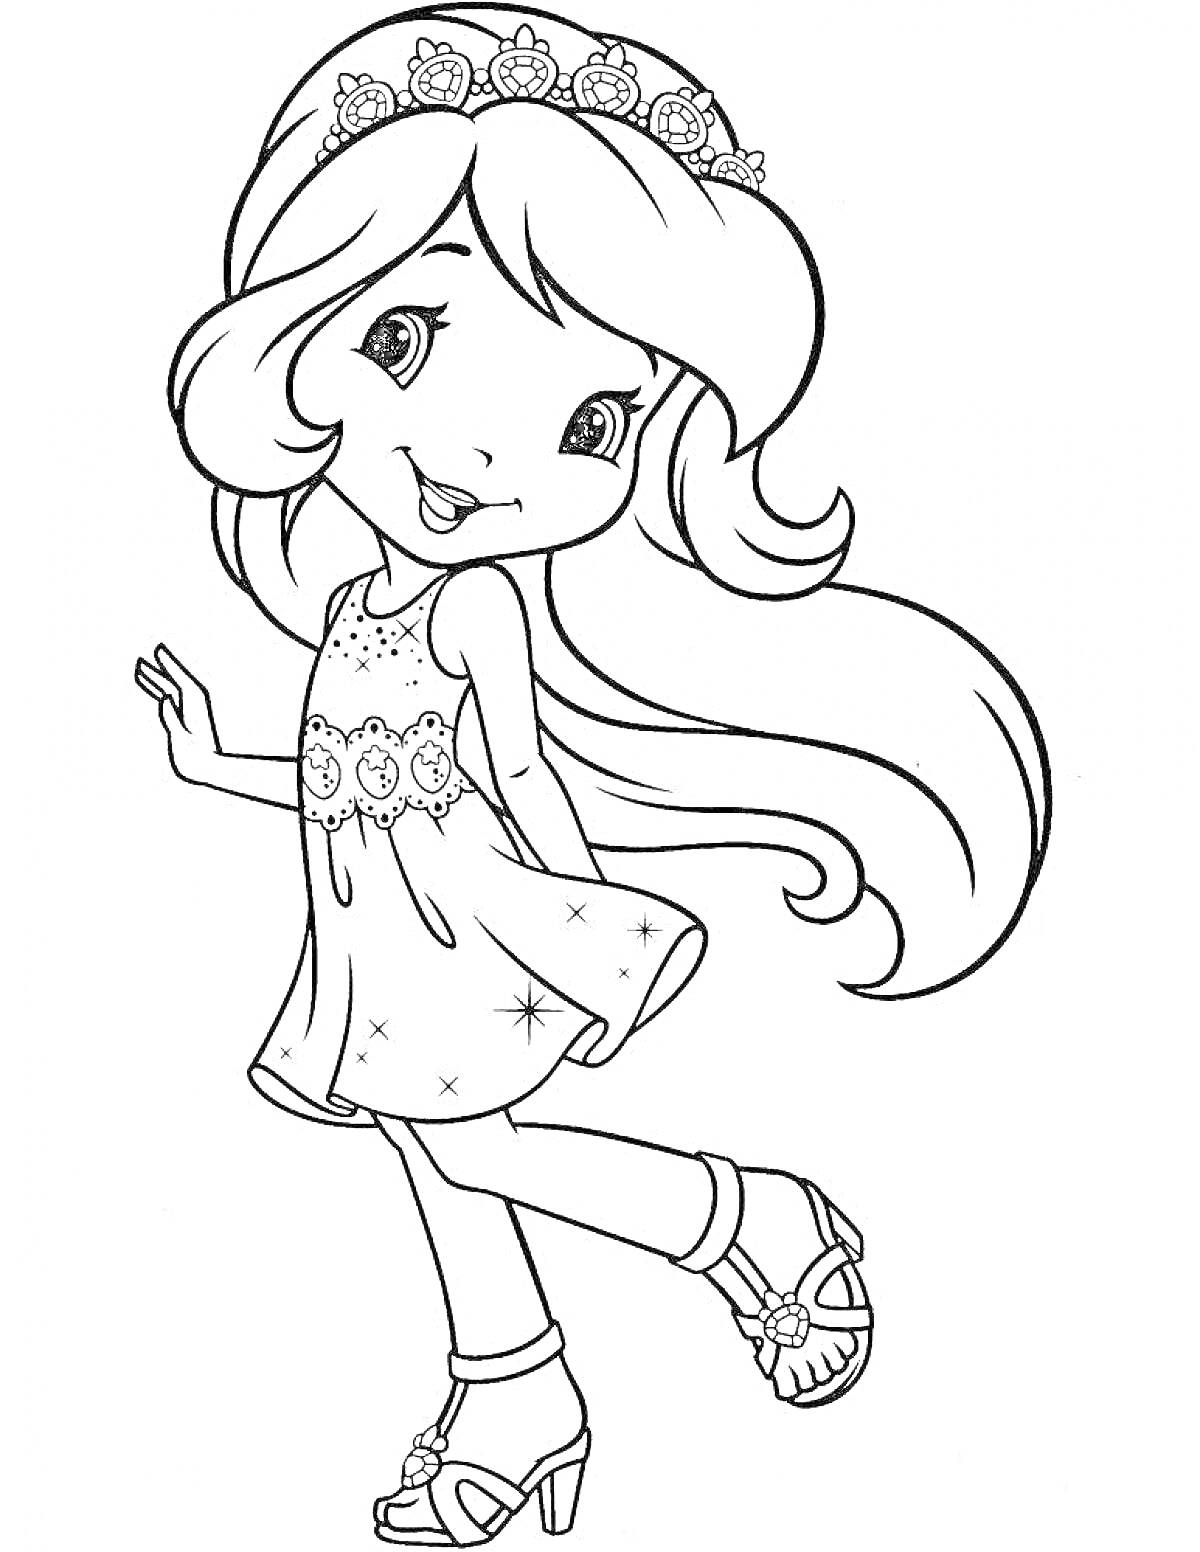 Раскраска Девочка с длинными волосами в платье с цветами и туфлях на каблуках